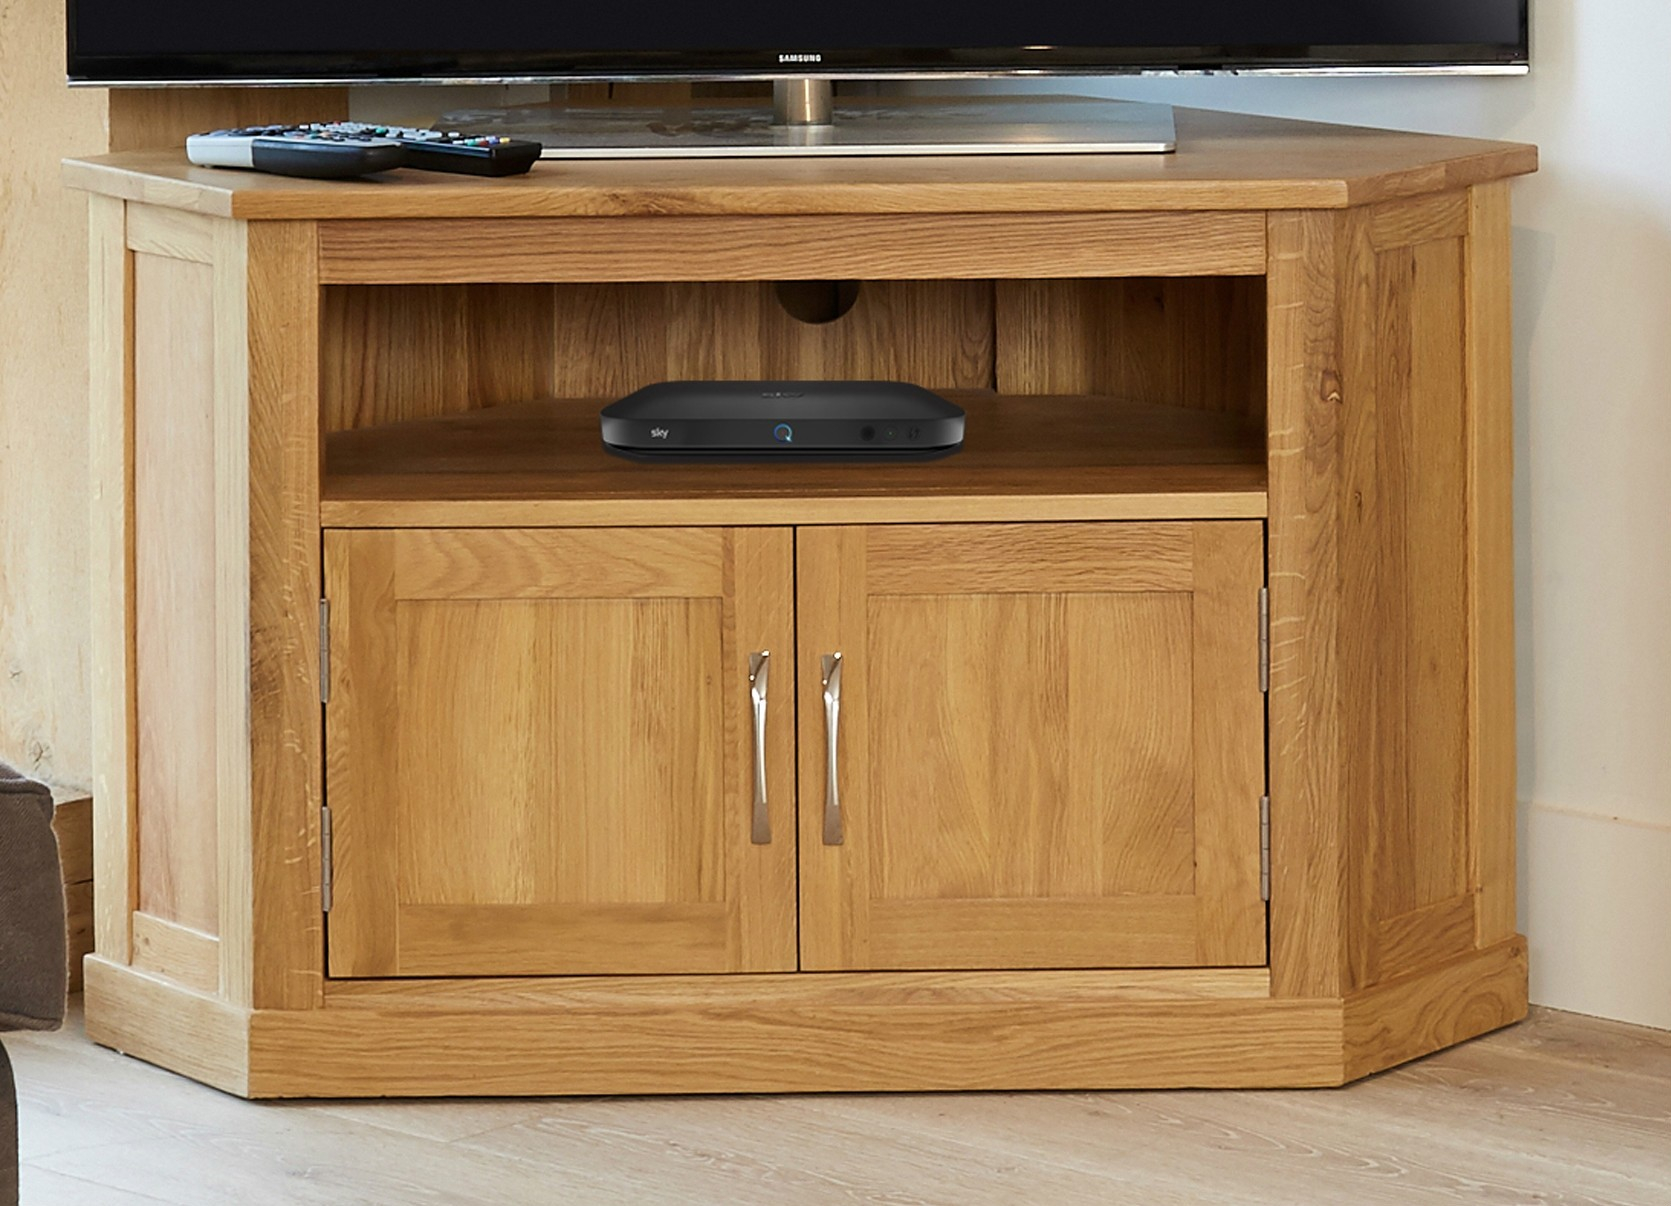  Oak  Corner Tv  Cabinet  Furniture  Patio Ideas